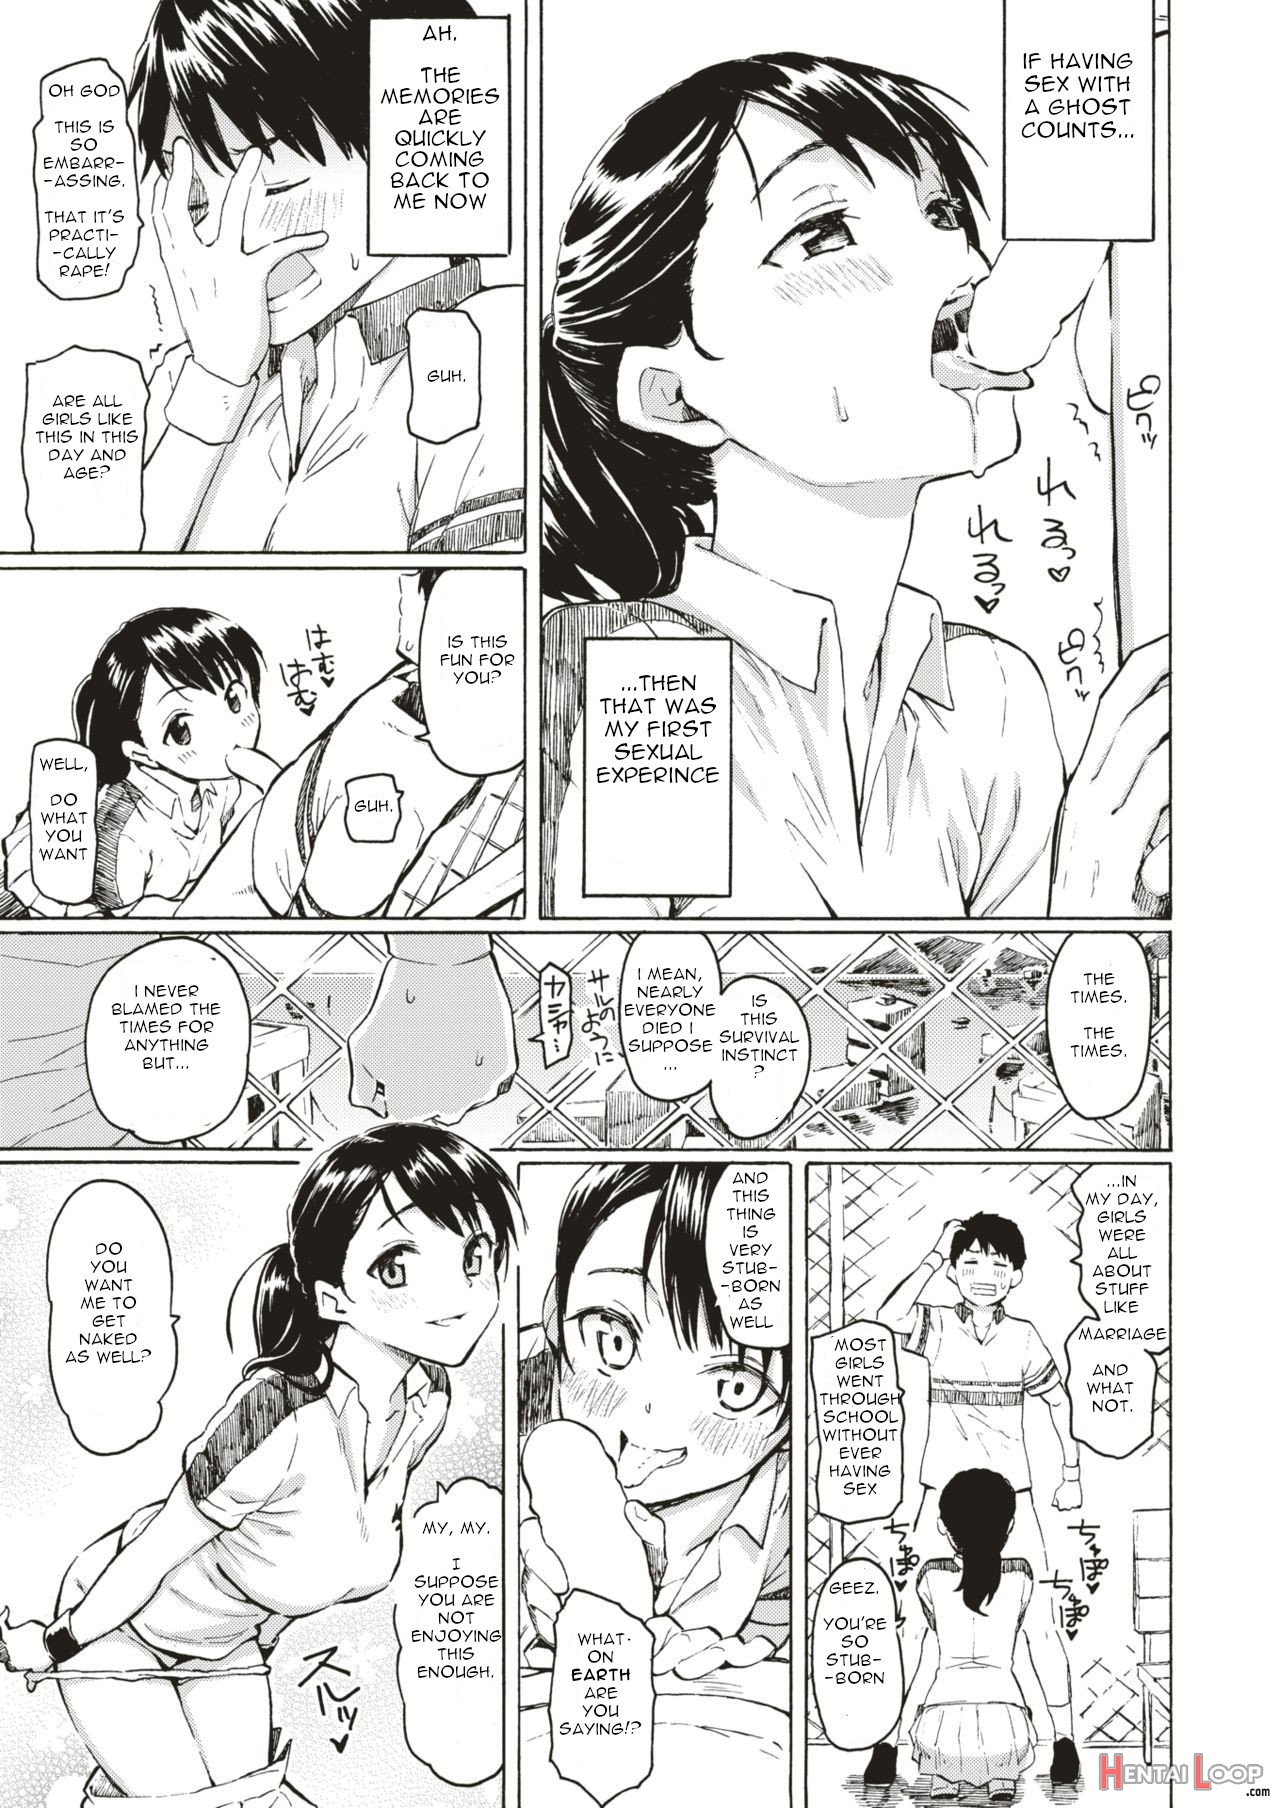 Kyouka No Niwa page 5